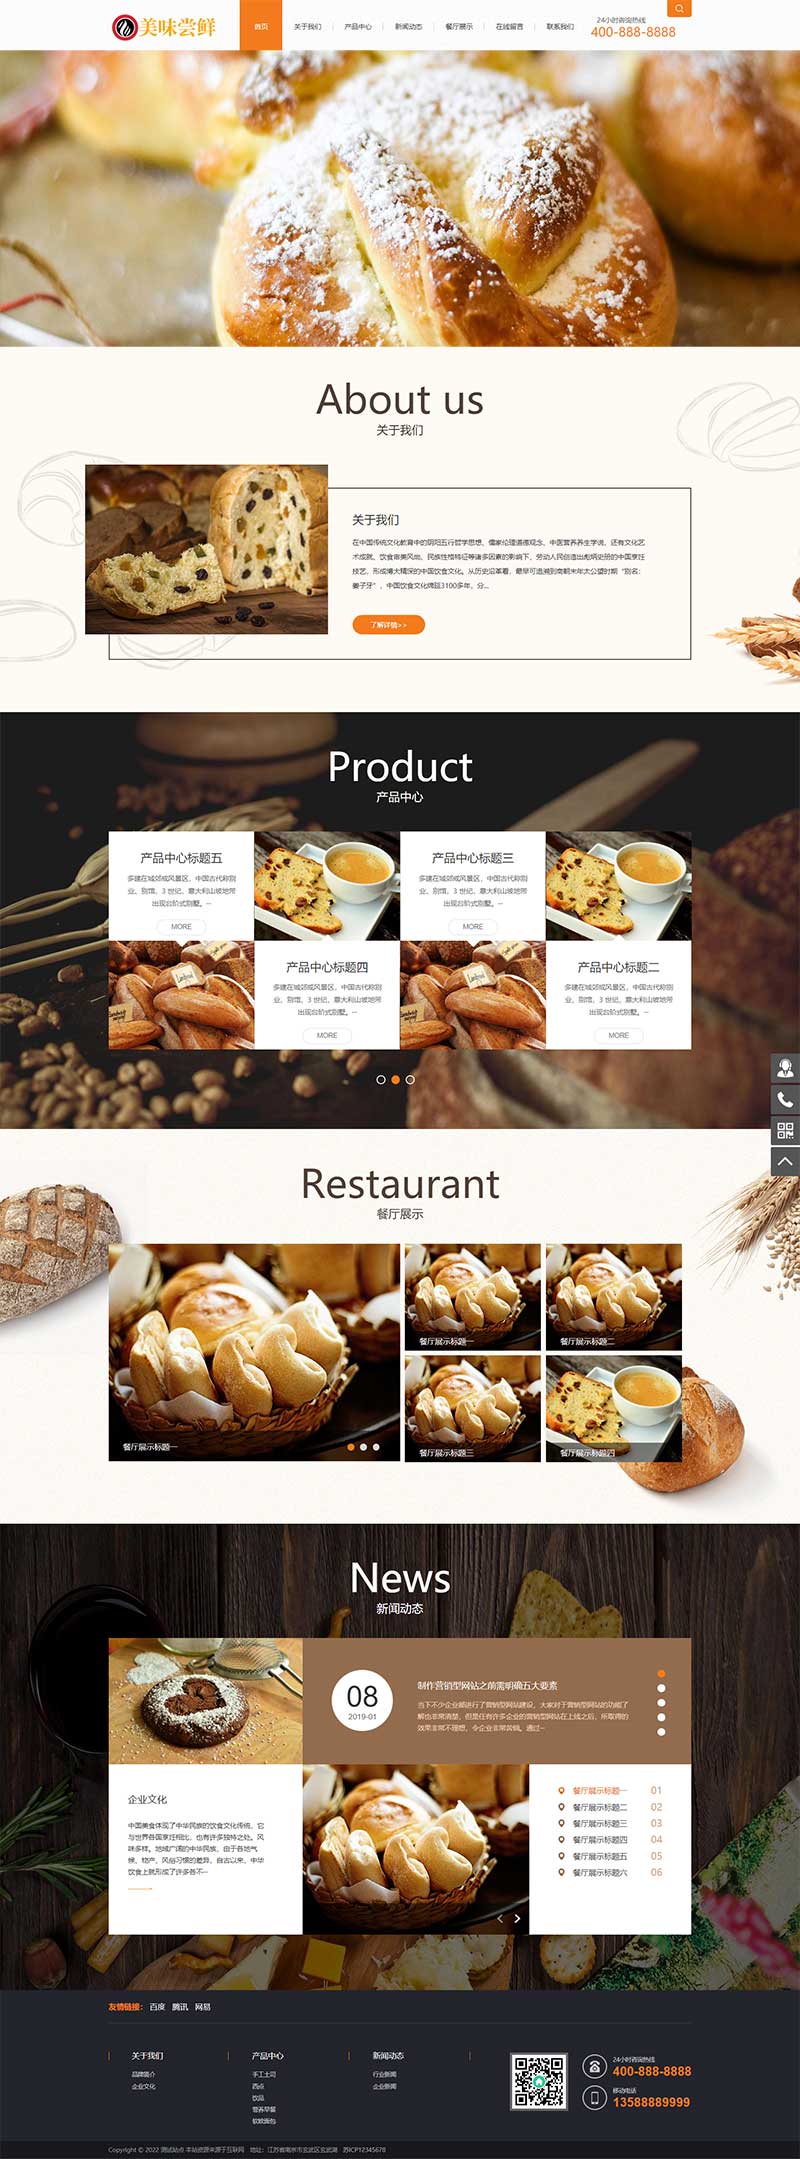 (PC+WAP)蛋糕店面包糕点食品类企业网站电脑端模板展示图片